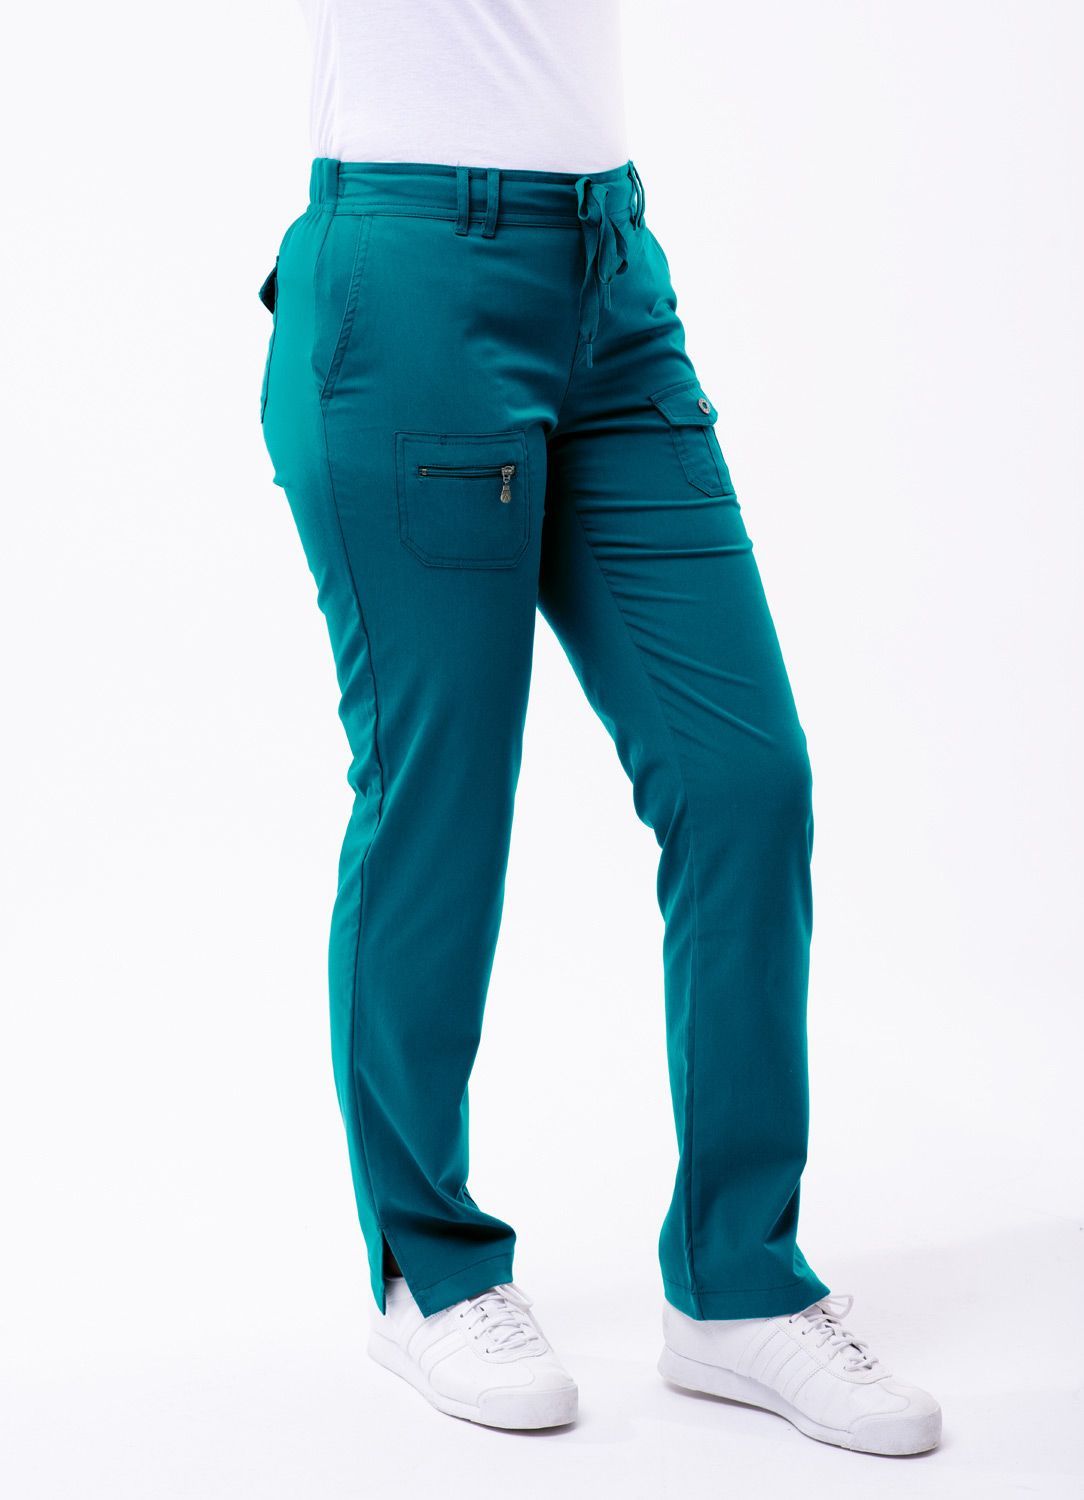 Slim Fit 6 Pocket Scrubs Pant by Adar (Petite) XXS-3XL / Black